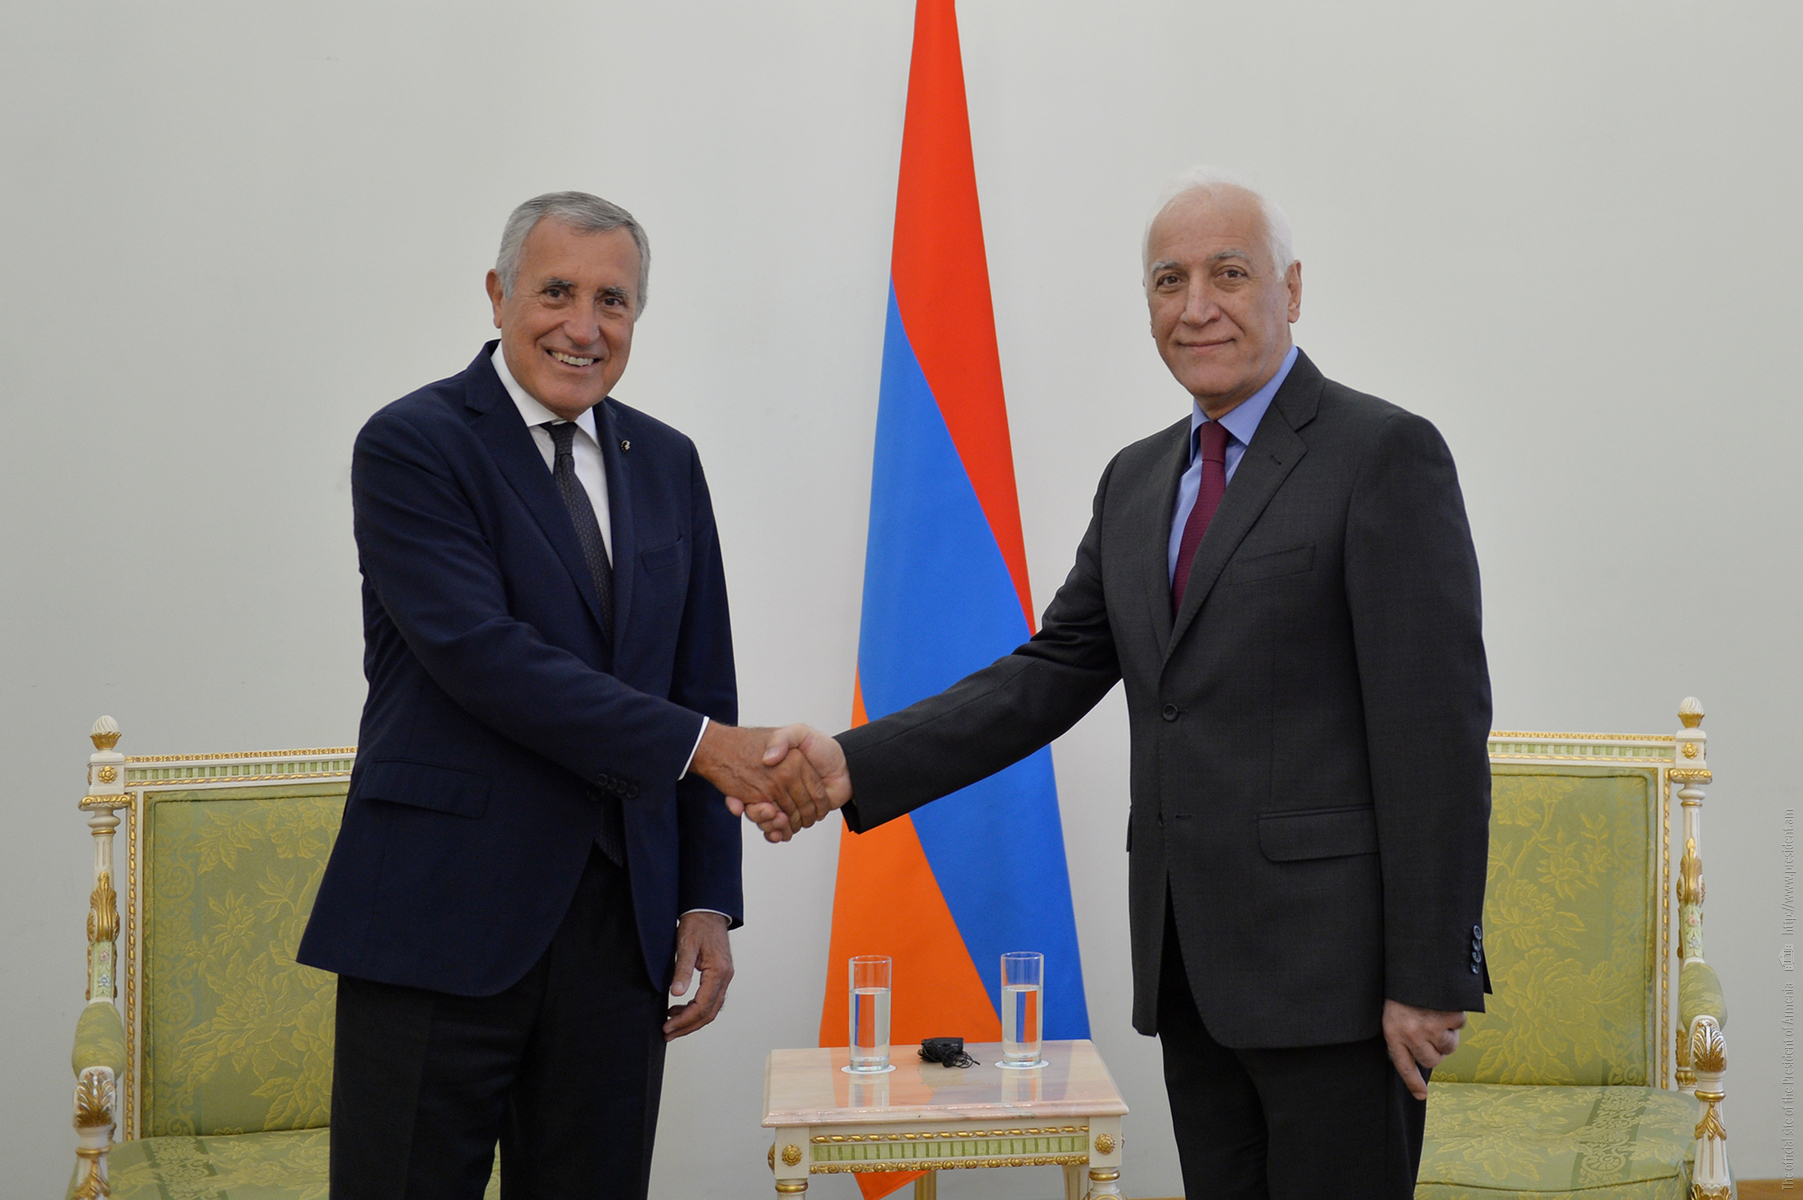 Le nouvel ambassadeur de l’Ordre souverain de Malte auprès de l’Arménie a présenté ses lettres de créance